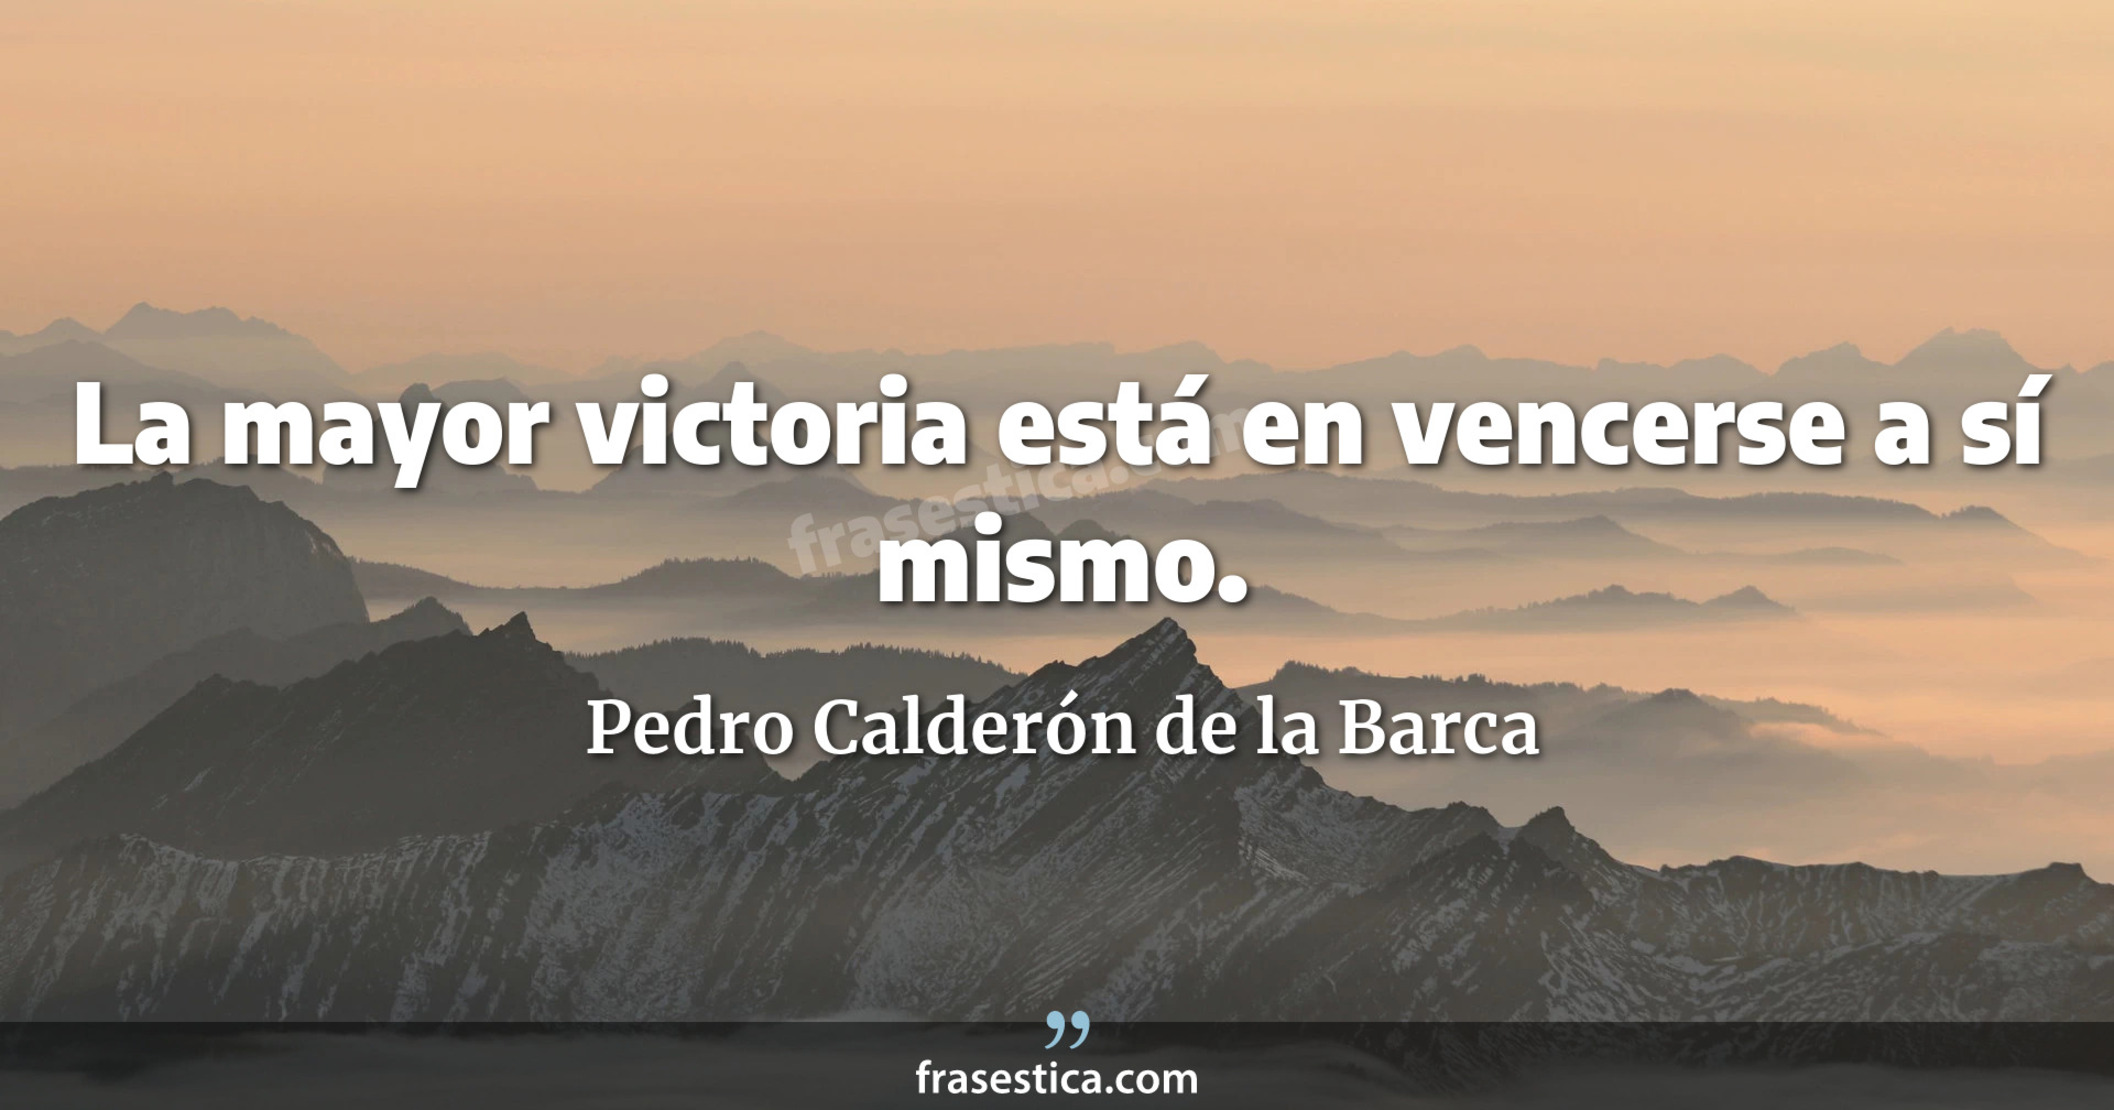 La mayor victoria está en vencerse a sí mismo. - Pedro Calderón de la Barca